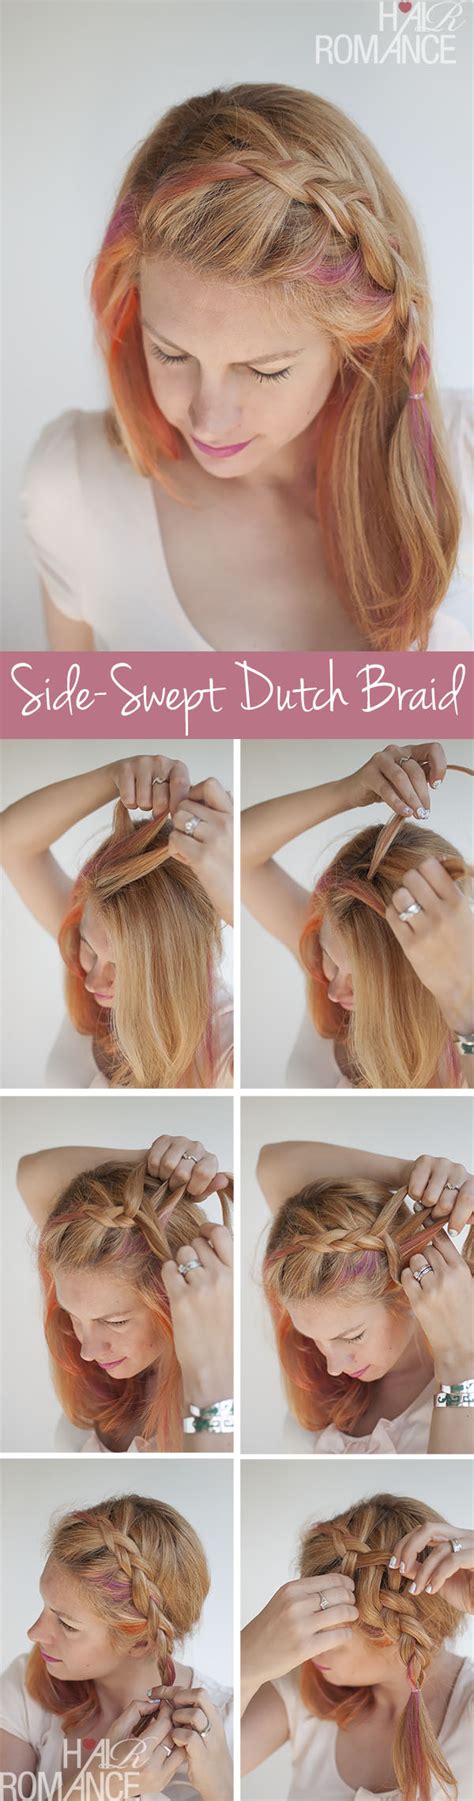 Side Swept Dutch Braid Hairstyle Tutorial Hair Romance